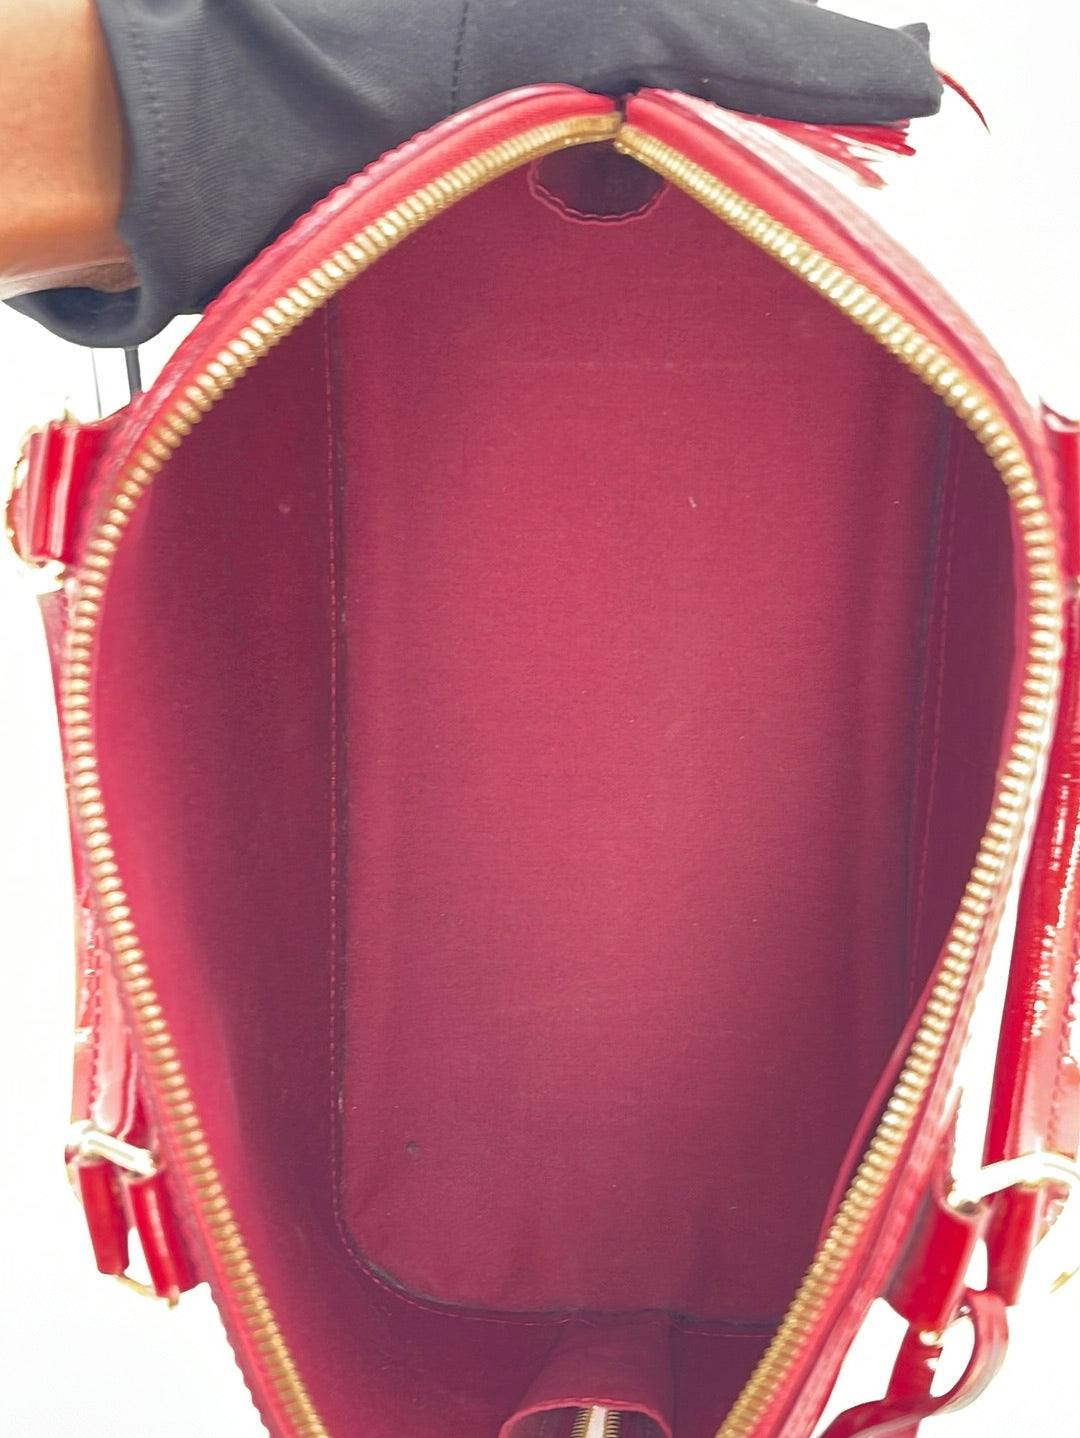 PRELOVED Louis Vuitton Red Monogram Vernis Alma PM Bag SN2163 070523